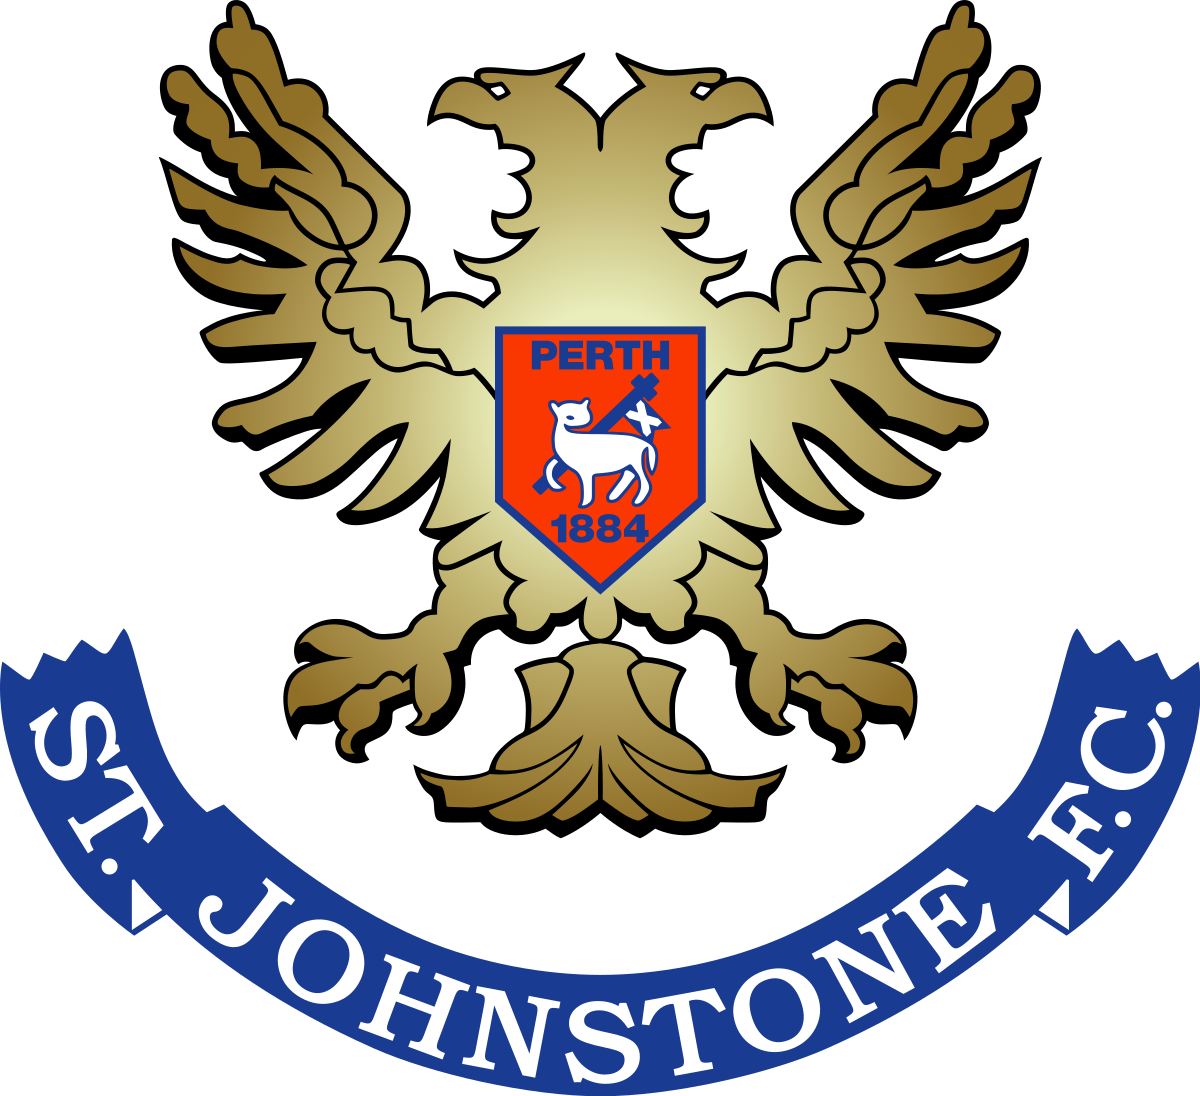 Places St Johnstone